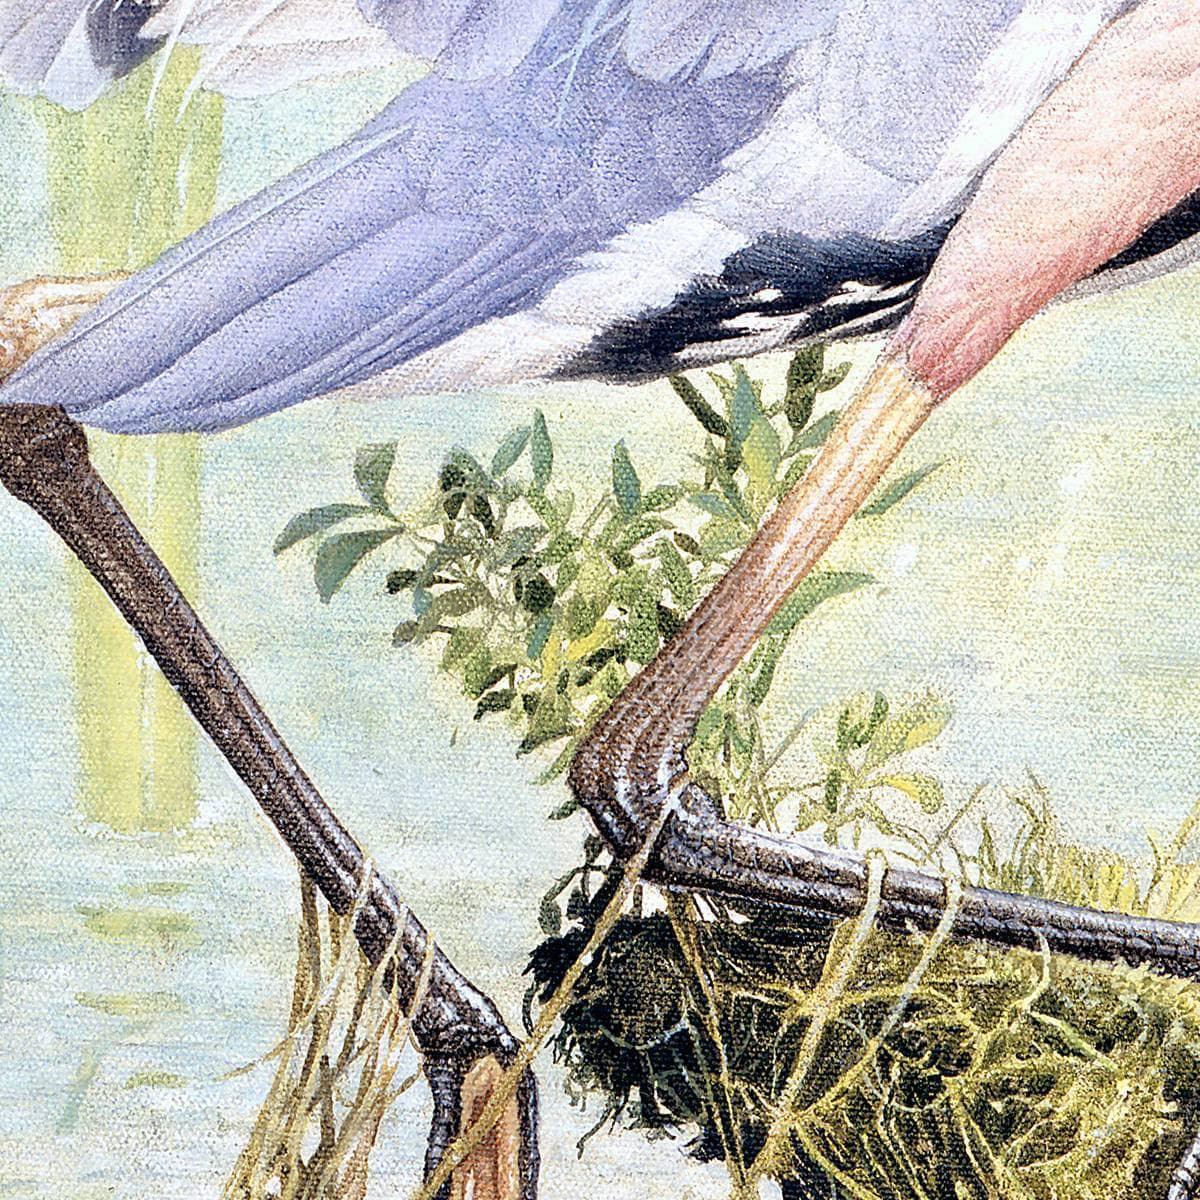 Great Blue Heron - Art Print | Artwork by Glen Loates